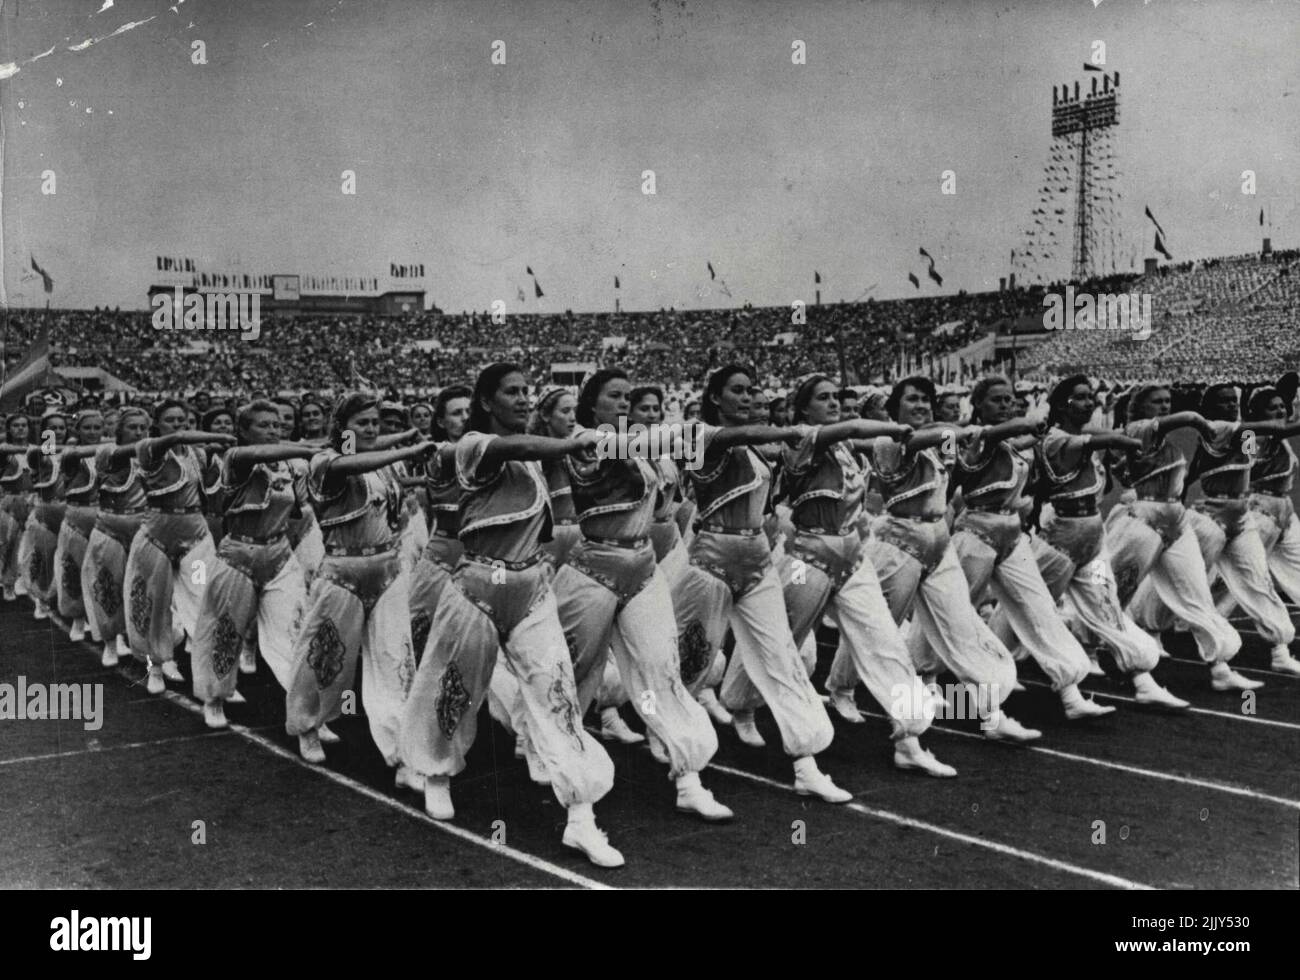 Les jeunes Dames de M. Malenkov -- Clad harem style, une équipe de femmes athlètes de Jzbek balancent leurs bras à travers leurs breats comme ils marchent avec une précision militaire dans le grand a; Russie le festival d'athlétisme a tenu 18 juillet 1954. À Moscou. Lors de cette réunion, neuf Otkalenki, détenteur du record du monde de 800 mètres féminin, a établi un nouveau record du monde pour les 800 mètres. Lors d'un festival d'athlétisme tout-Russie à Moscou, des femmes athlètes de la République ouzbek ont défilé dans les costumes colorés de l'Asie centrale. 20 avril 1955. Banque D'Images